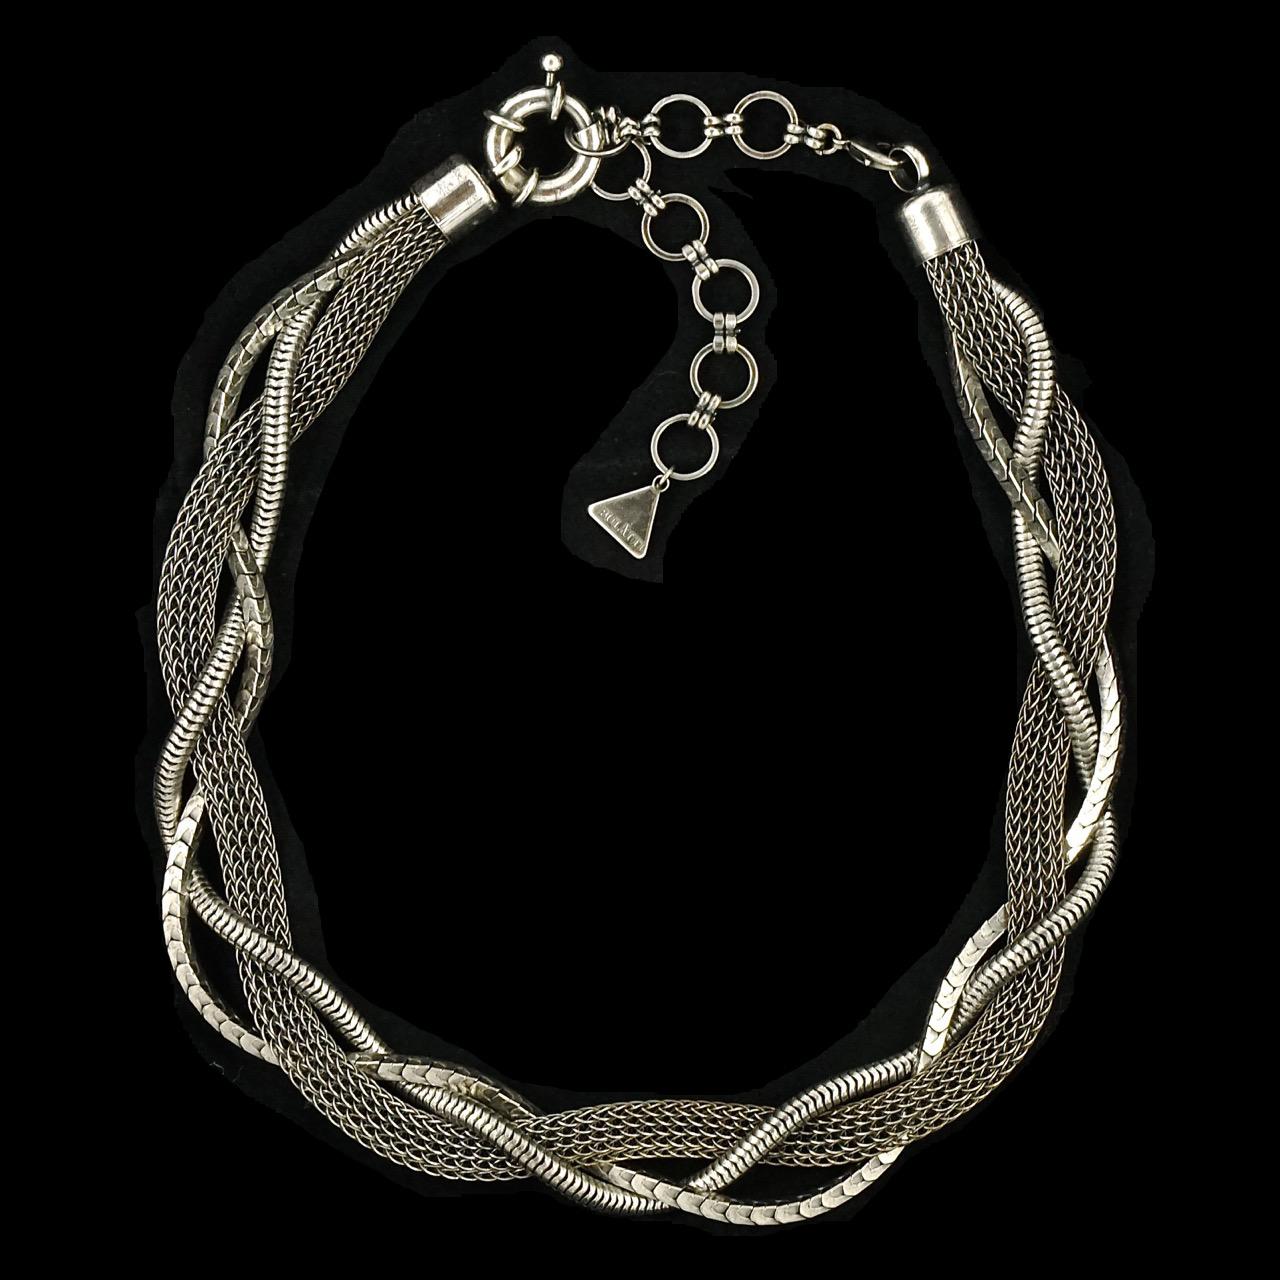 Ermani Bulatti Antiqued Silver Tone Triple Chain Necklace circa 1980s For Sale 2